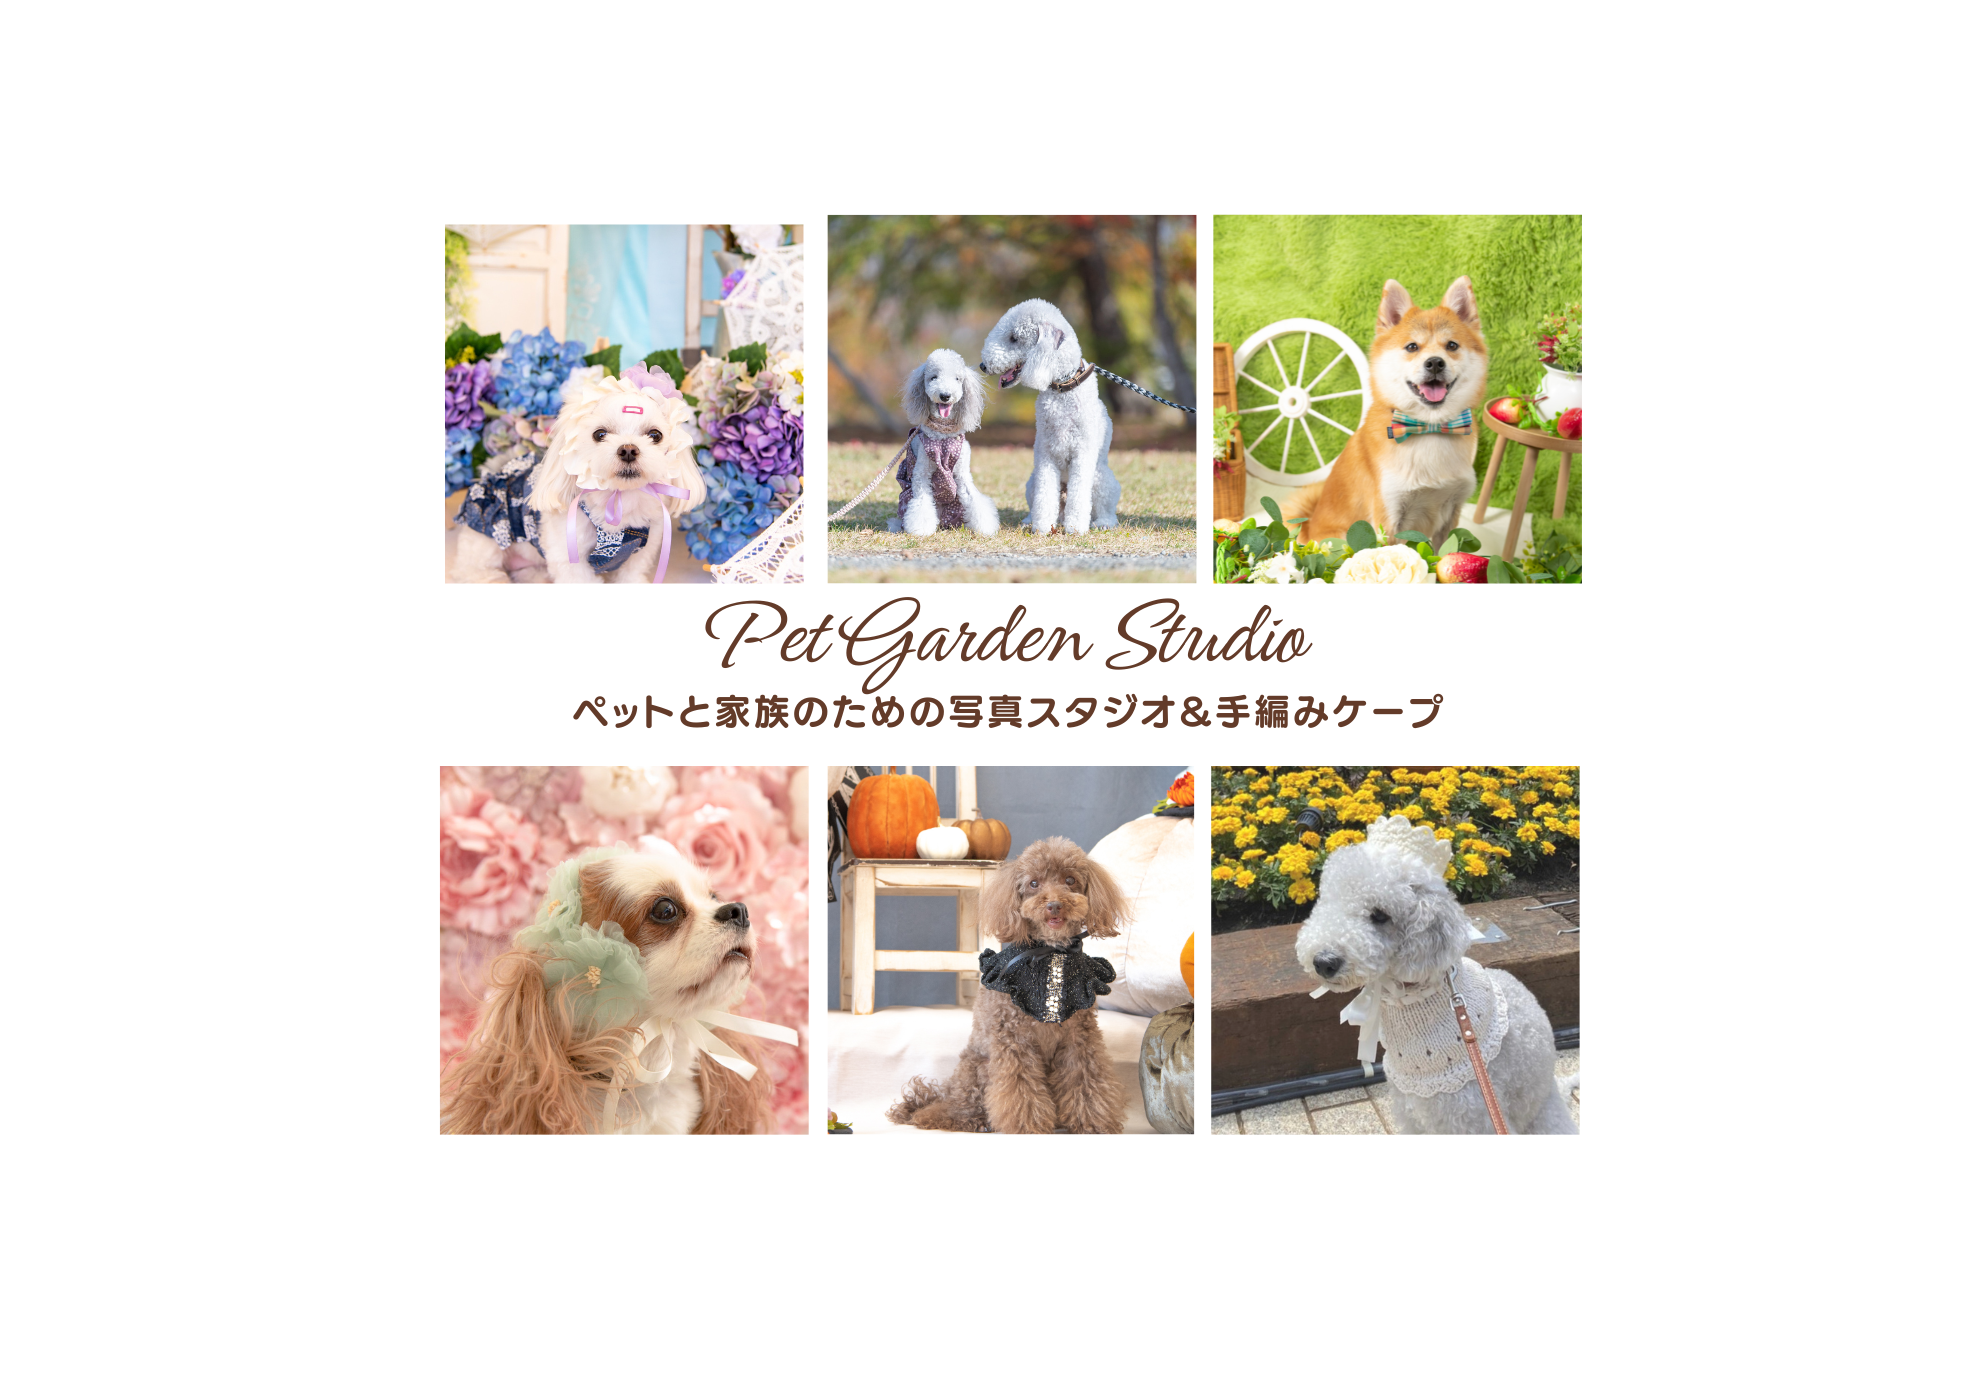 Pet Garden Studio Atelier Cuddly